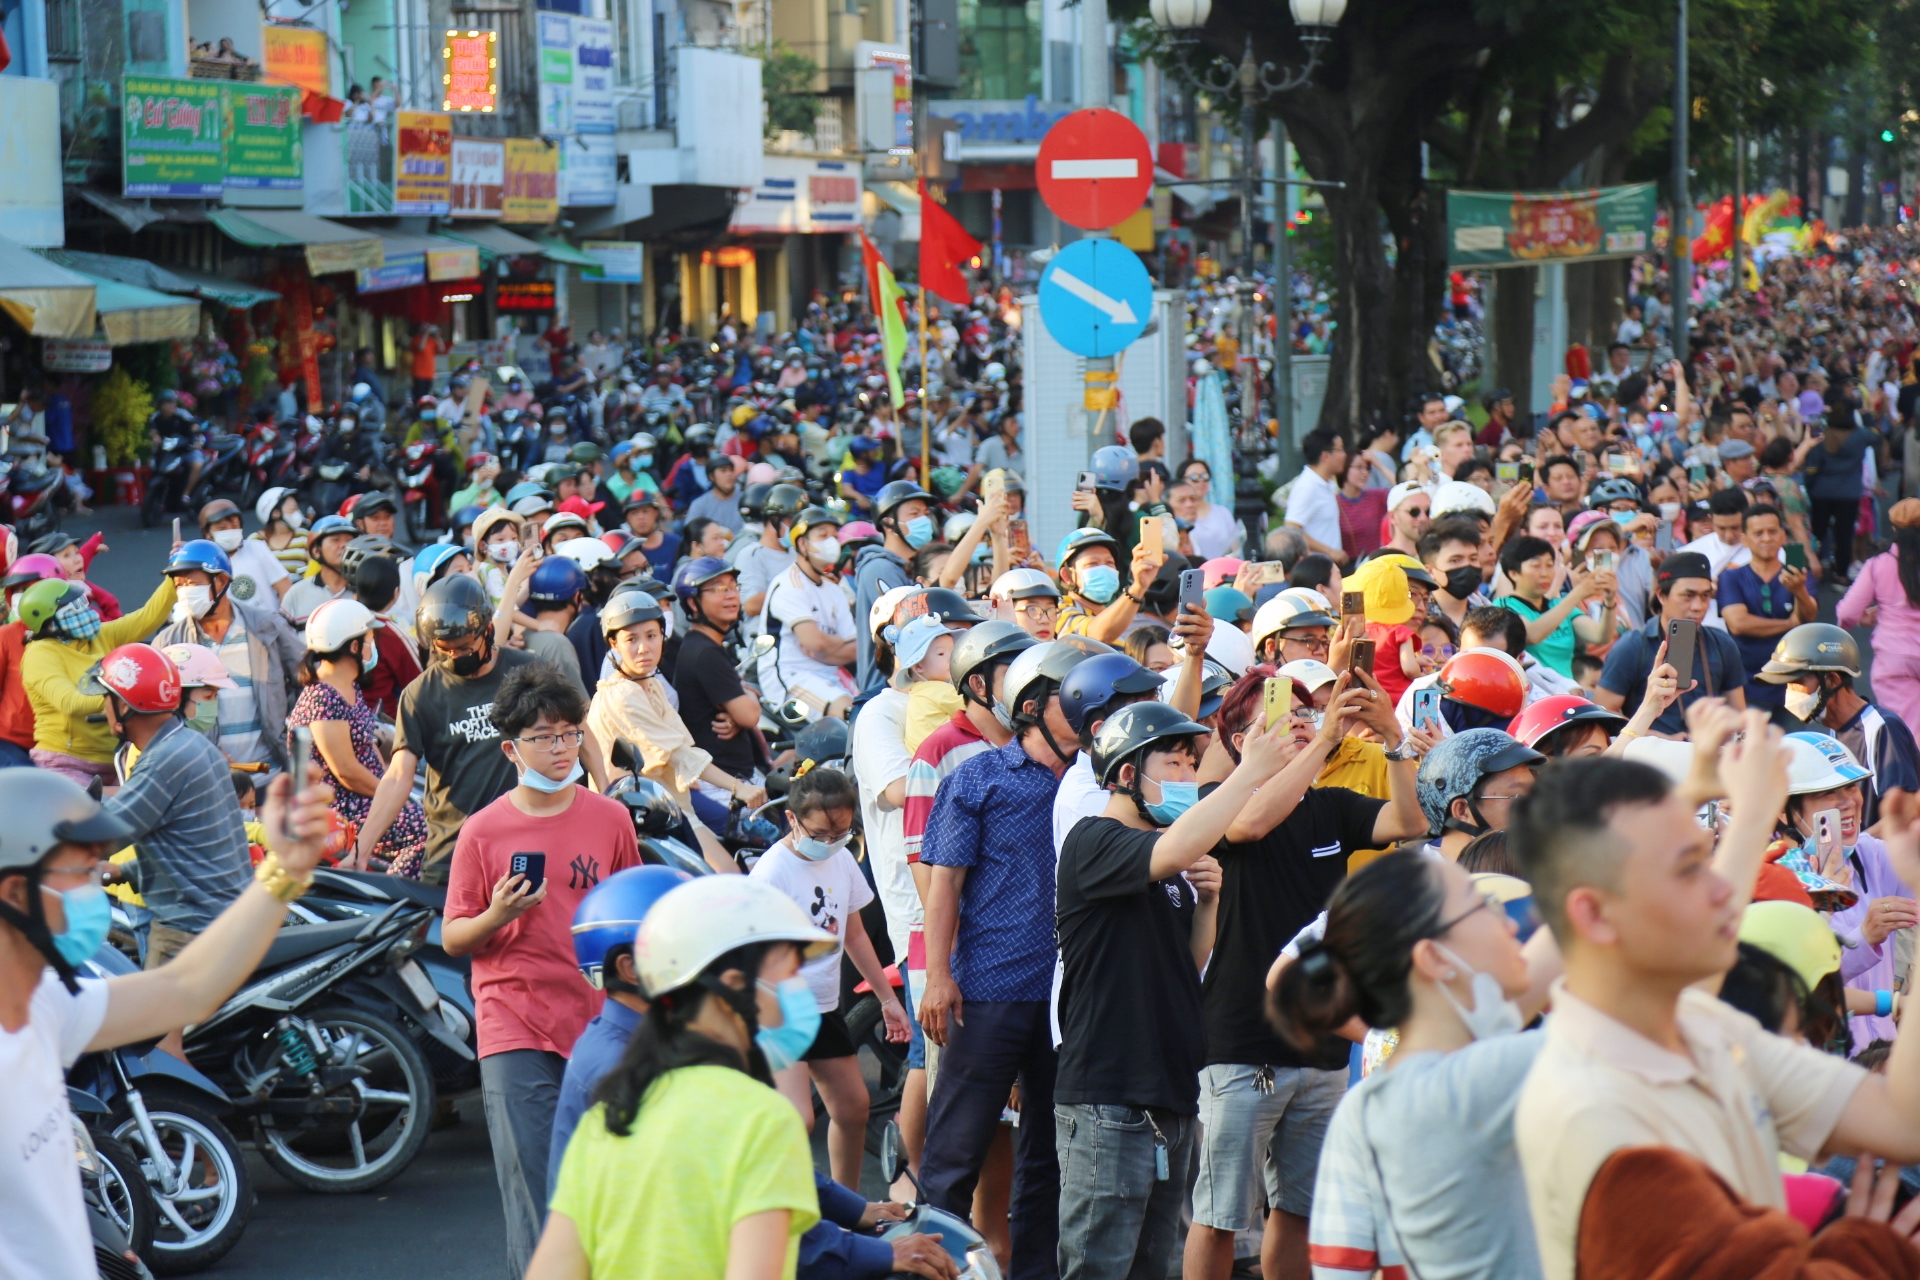 View - Chùm ảnh: Hàng nghìn người dân TPHCM chen nhau xem Bát Tiên khiến các tuyến đường kẹt cứng